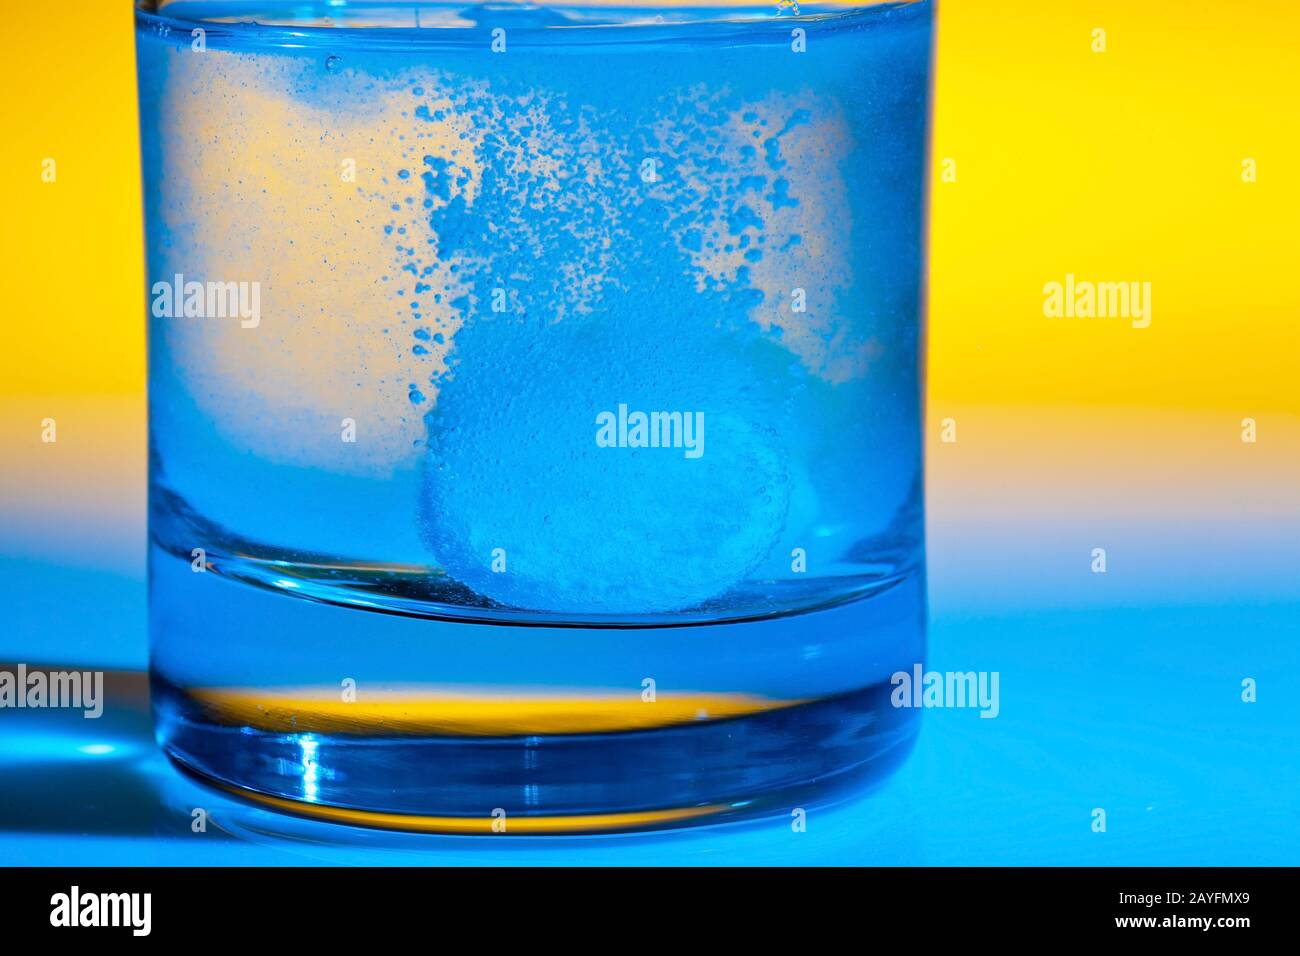 Eine Brausetablette loest sich in einem Glas Wasser auf, Aspirin, Stock Photo